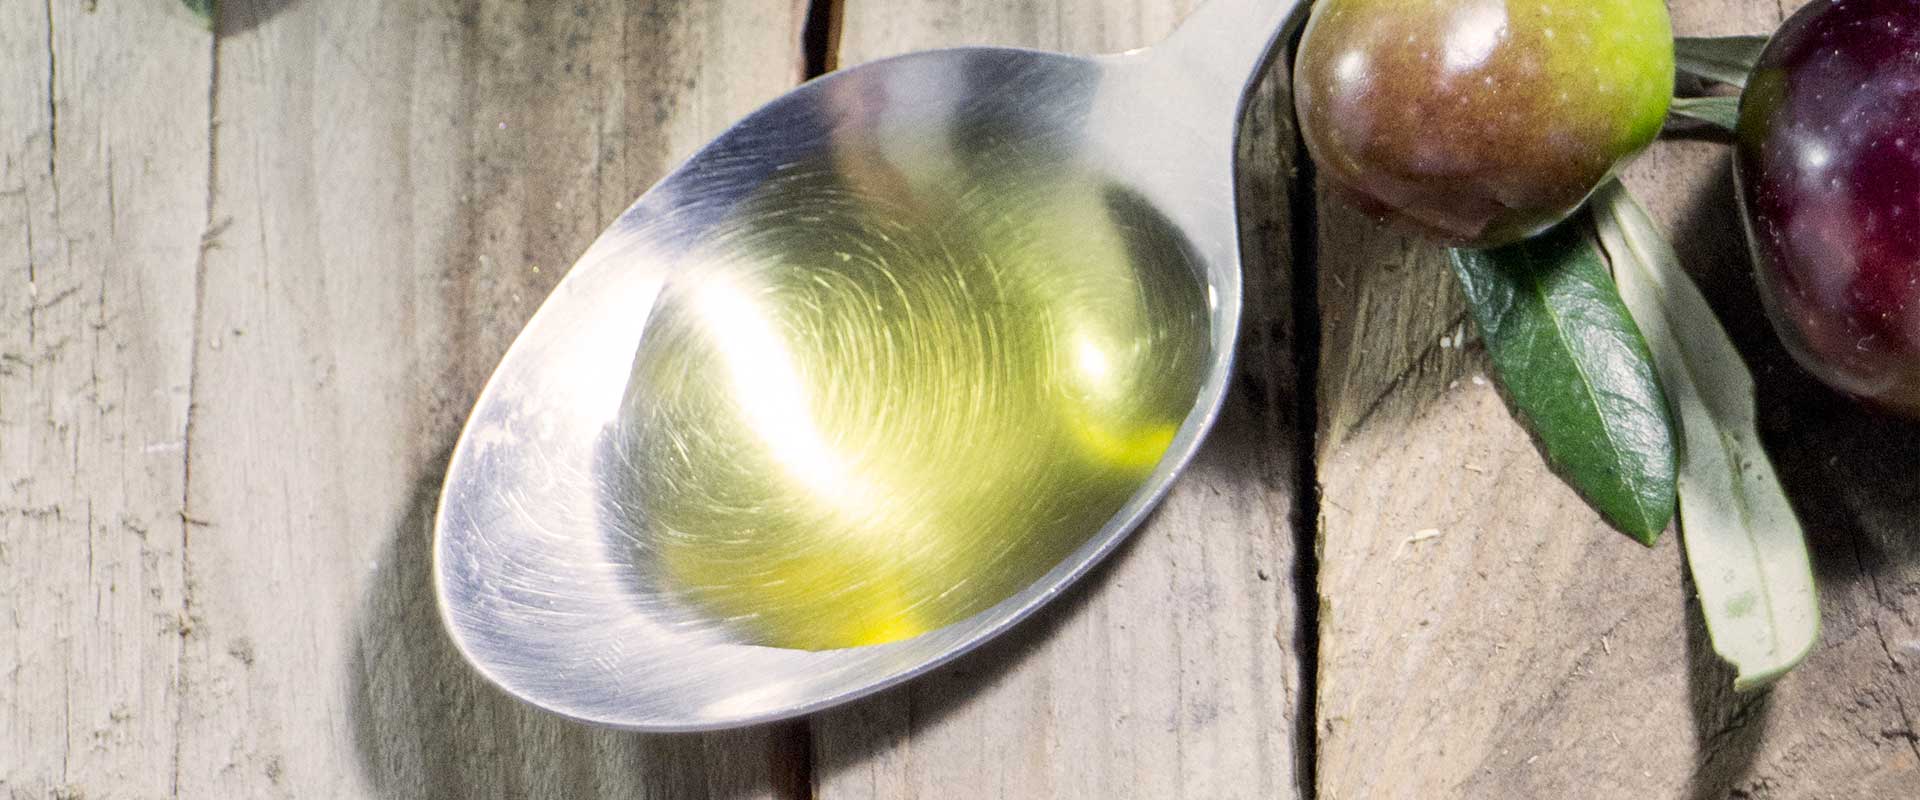 Gustare l'olio d'oliva sul pane